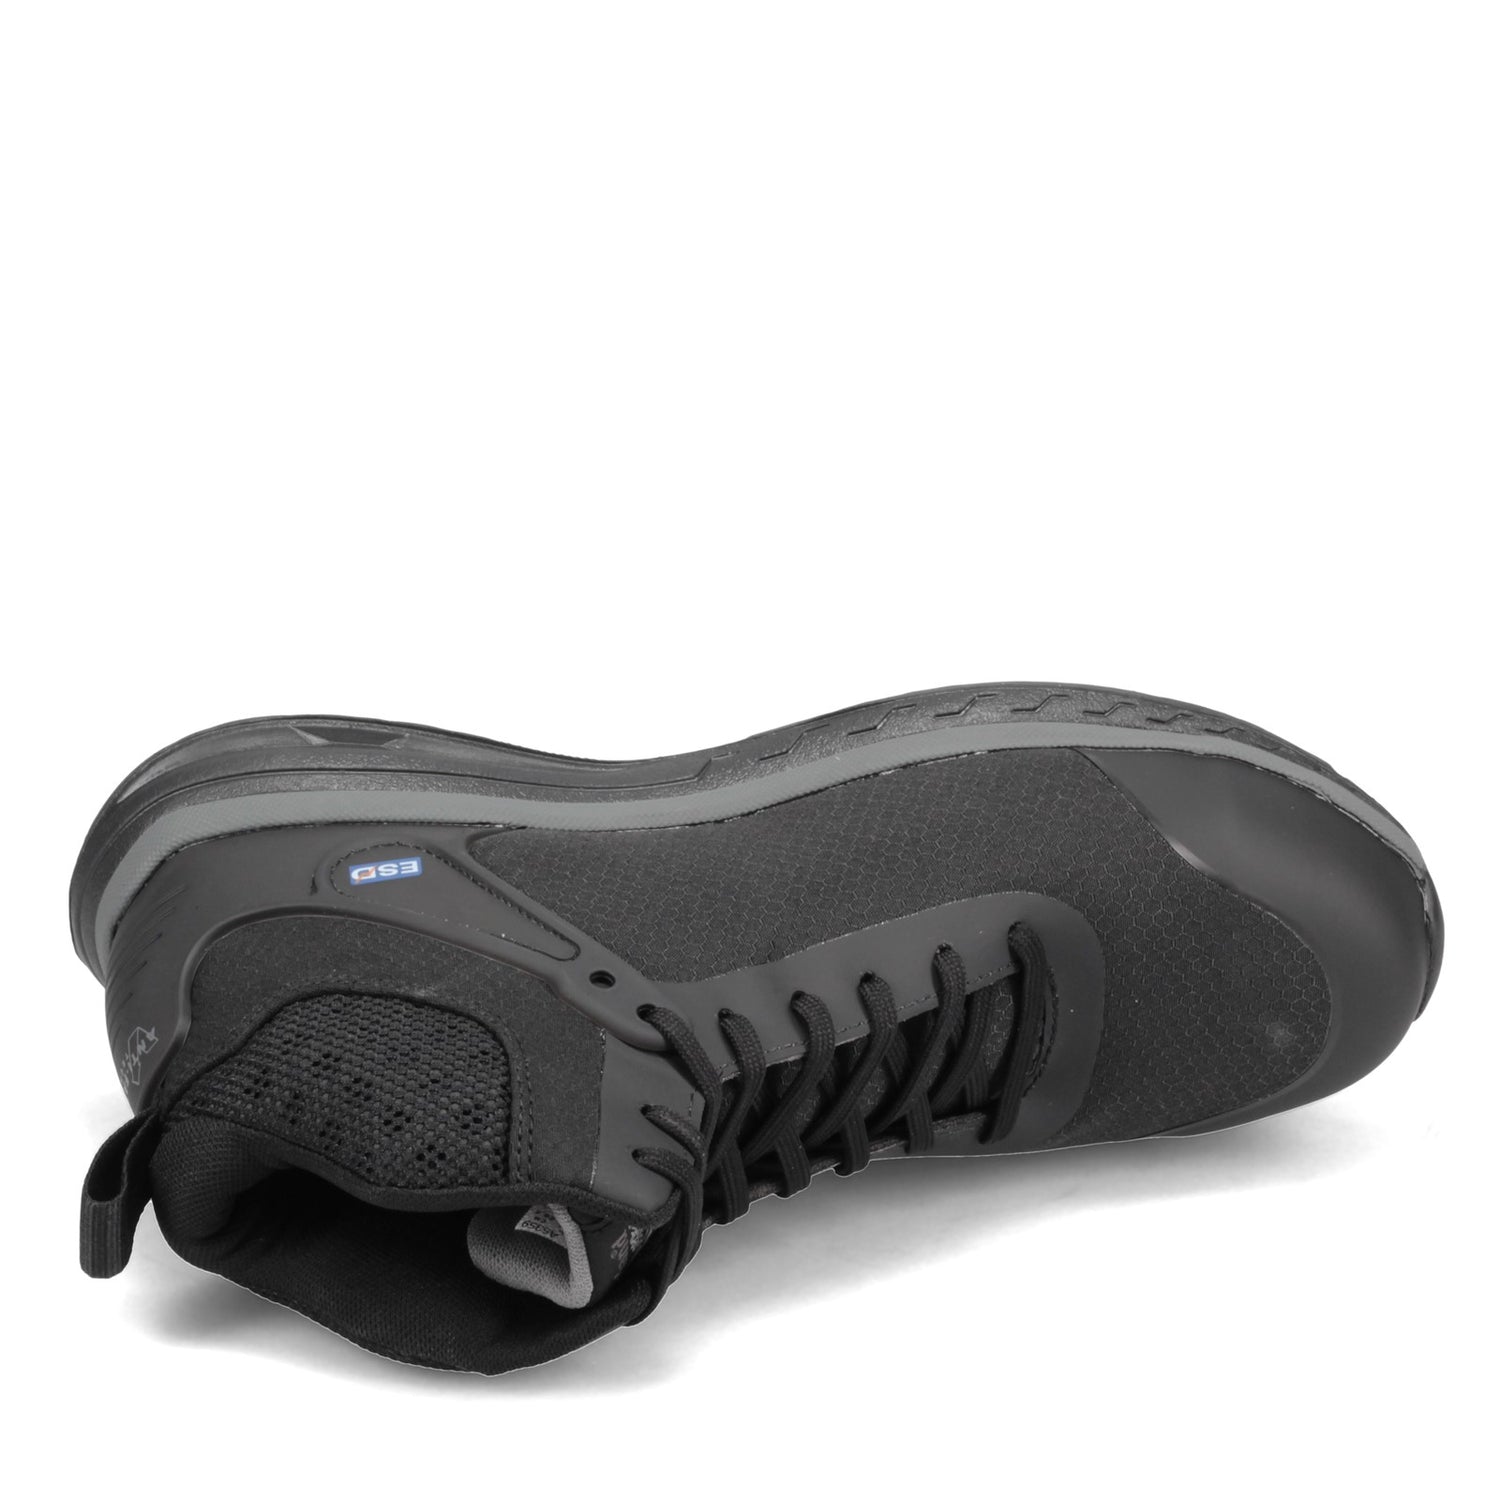 Peltz Shoes  Men's Timberland Pro Drivetrain Mid NT Composite Safety Toe Work Shoe BLACK TB0A1S5M001